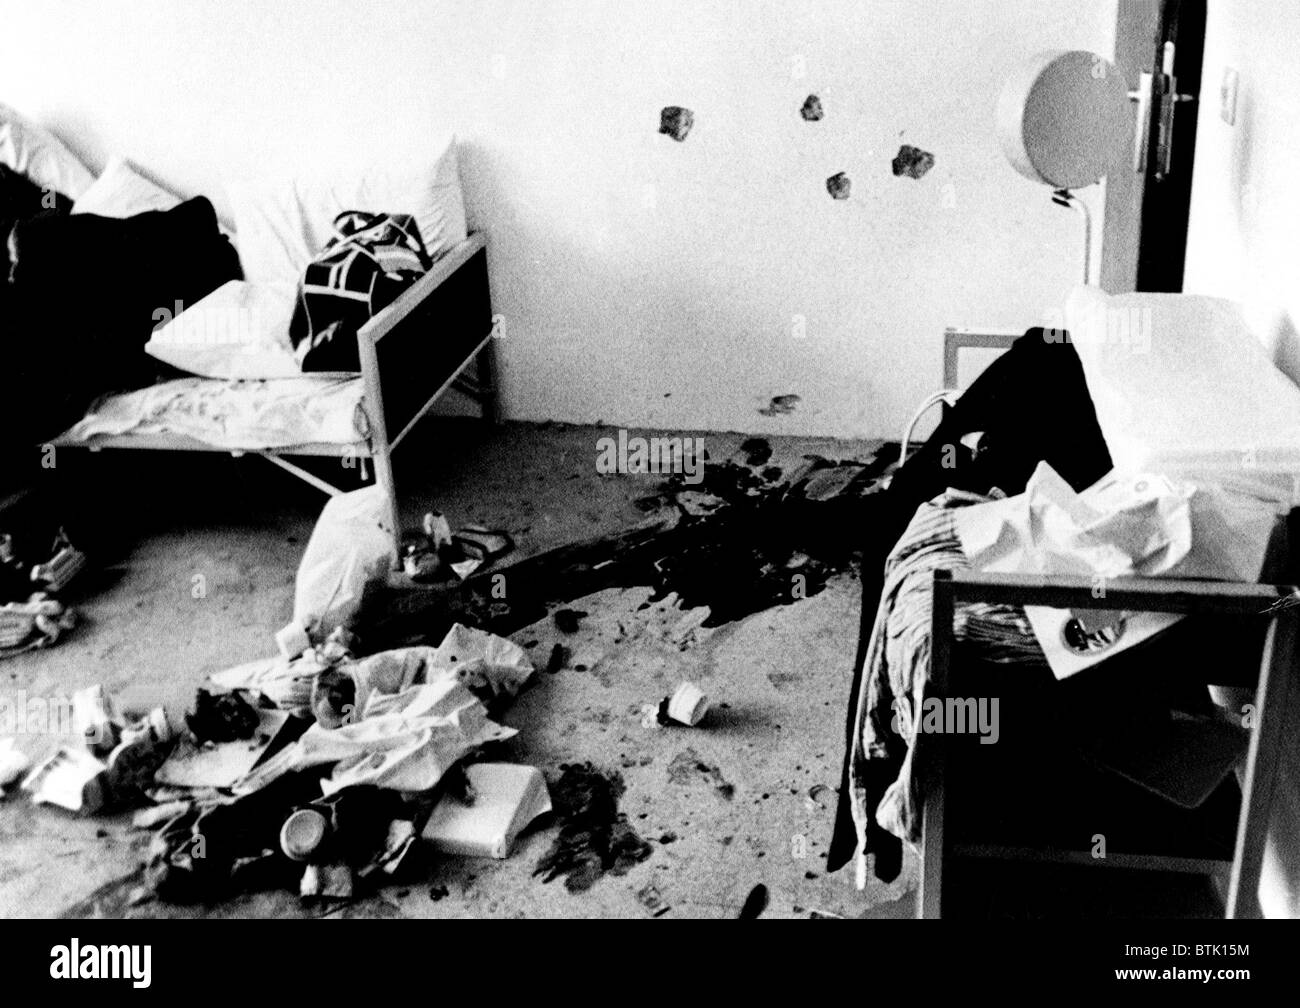 L'appartement de l'équipe olympique israélienne à Munich après la guérilla arabe attaque terroriste, 1972 Banque D'Images